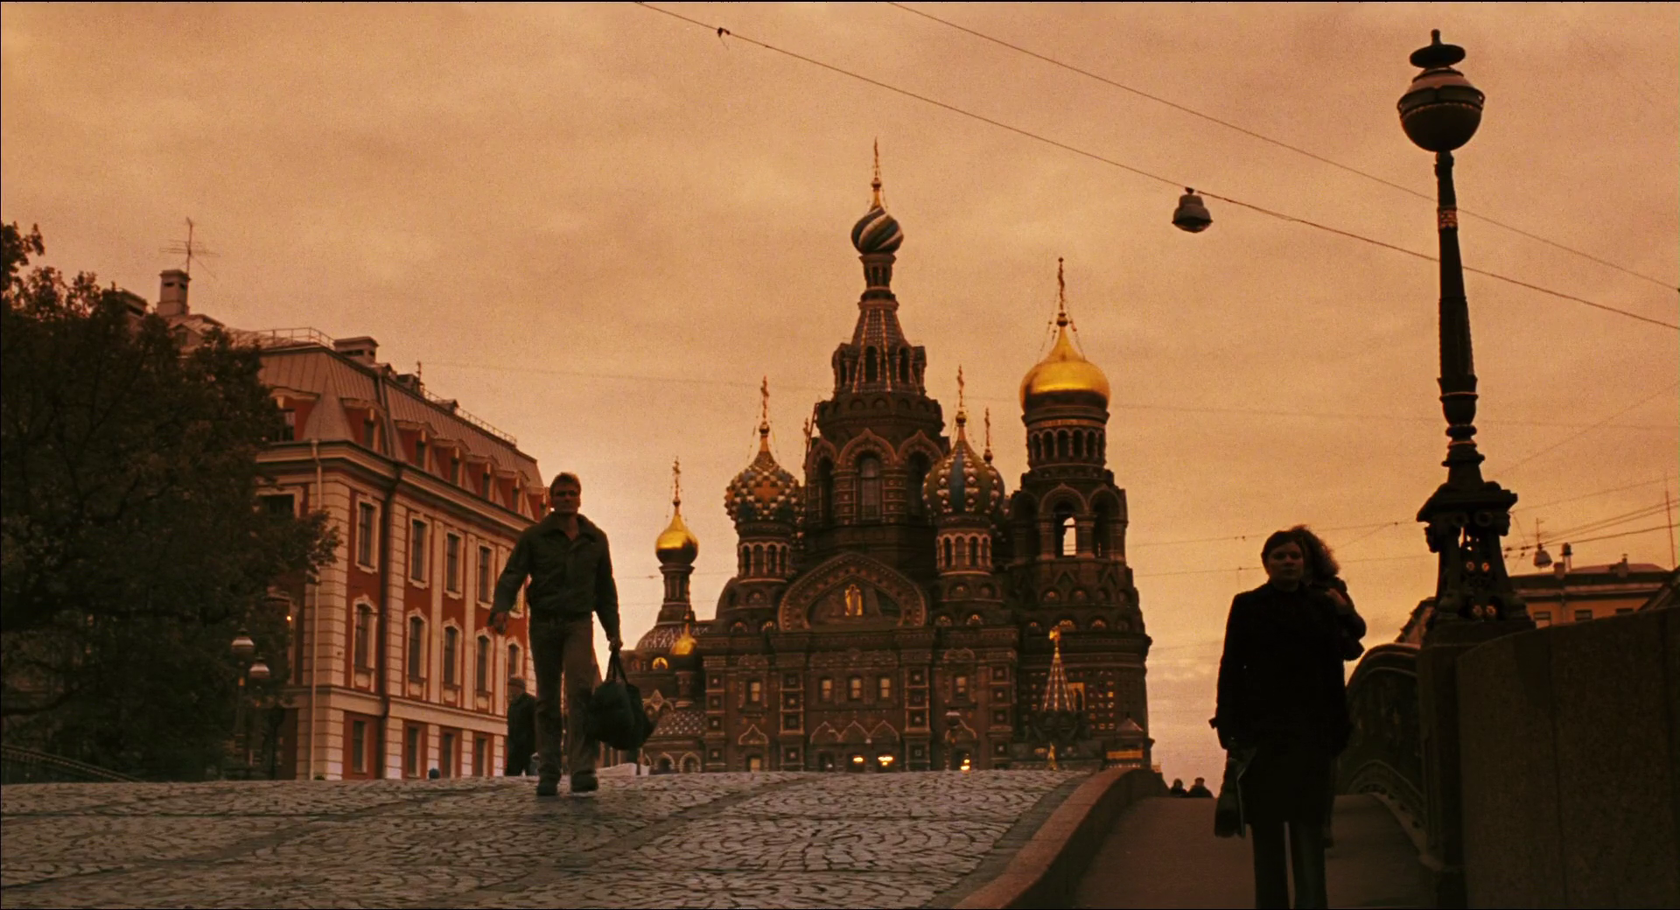 Храм Спаса на Крови – на его фоне, решив все боевые задачи, Лундгрен позирует в заключительных кадрах фильма.